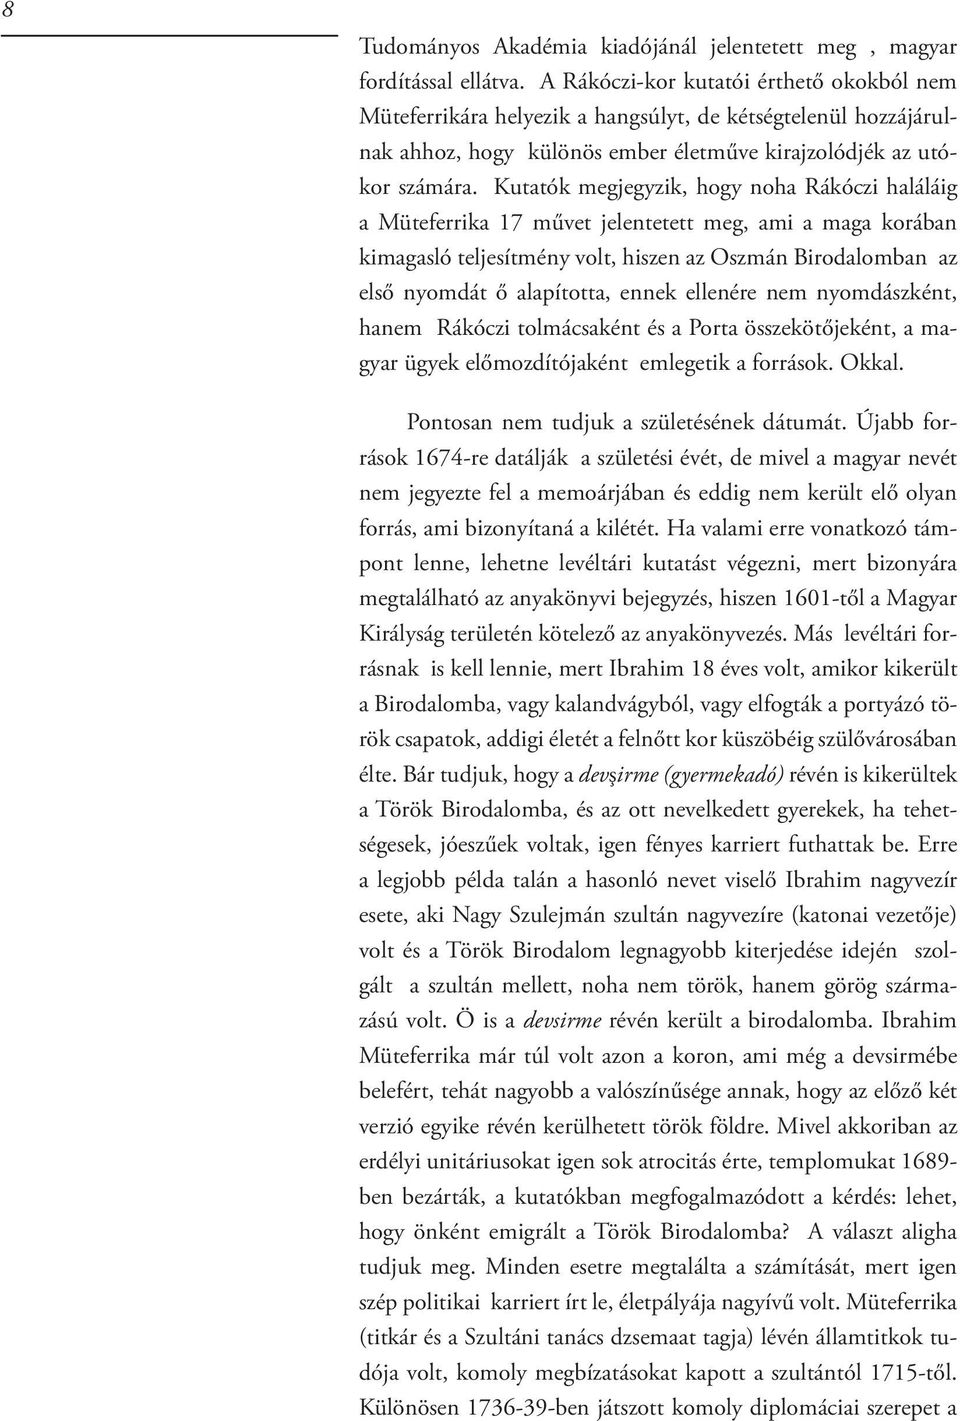 Kutatók megjegyzik, hogy noha Rákóczi haláláig a Müteferrika 17 művet jelentetett meg, ami a maga korában kimagasló teljesítmény volt, hiszen az Oszmán Birodalomban az első nyomdát ő alapította,